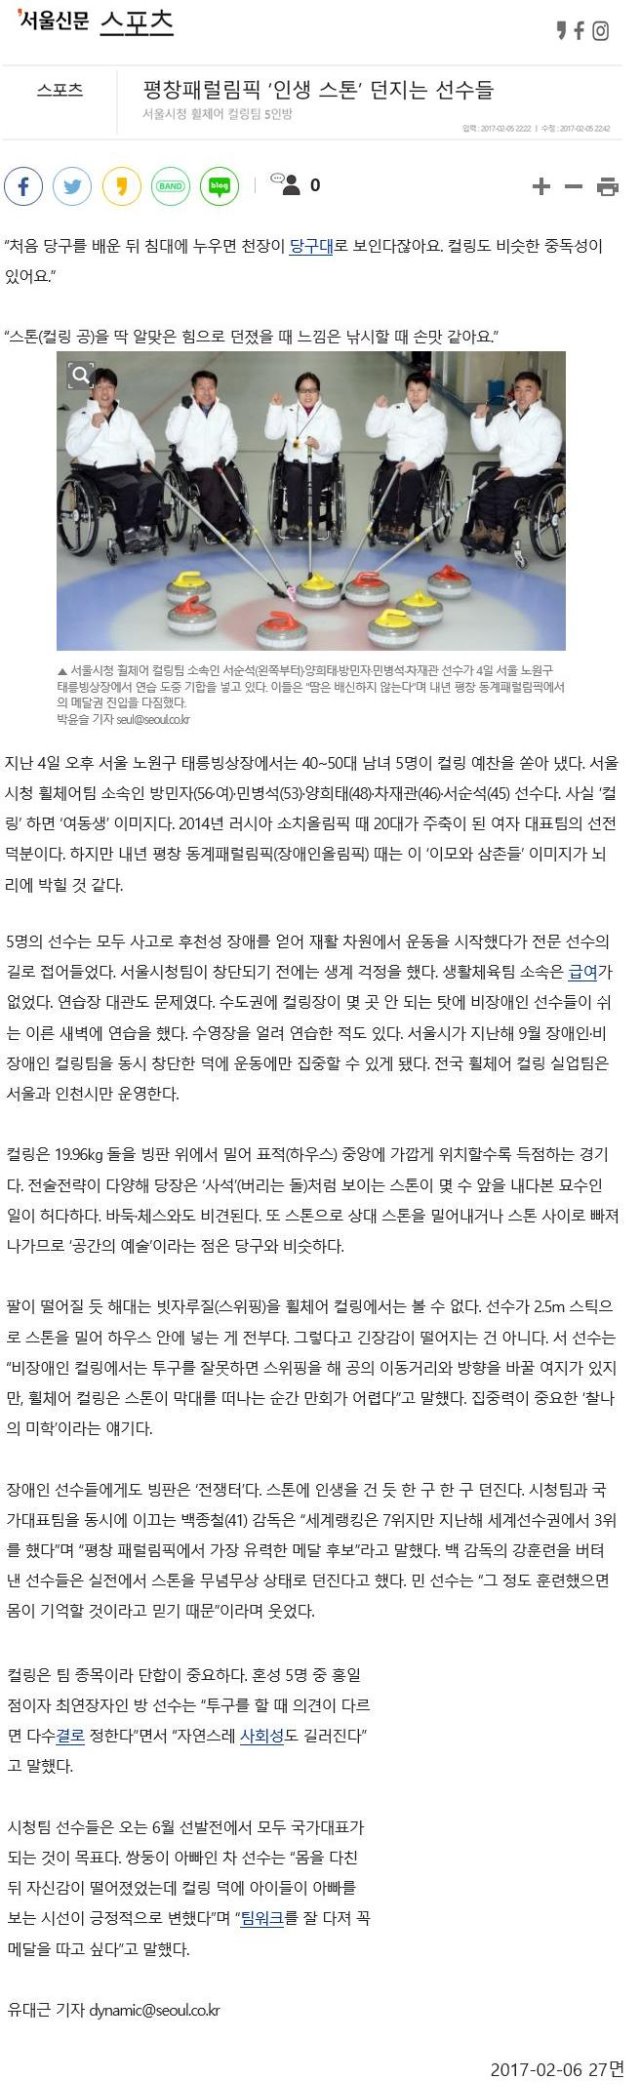 [2017.02.06][서울신문] 평창패럴림픽 '인생 스톤' 던지는 선수들.jpg